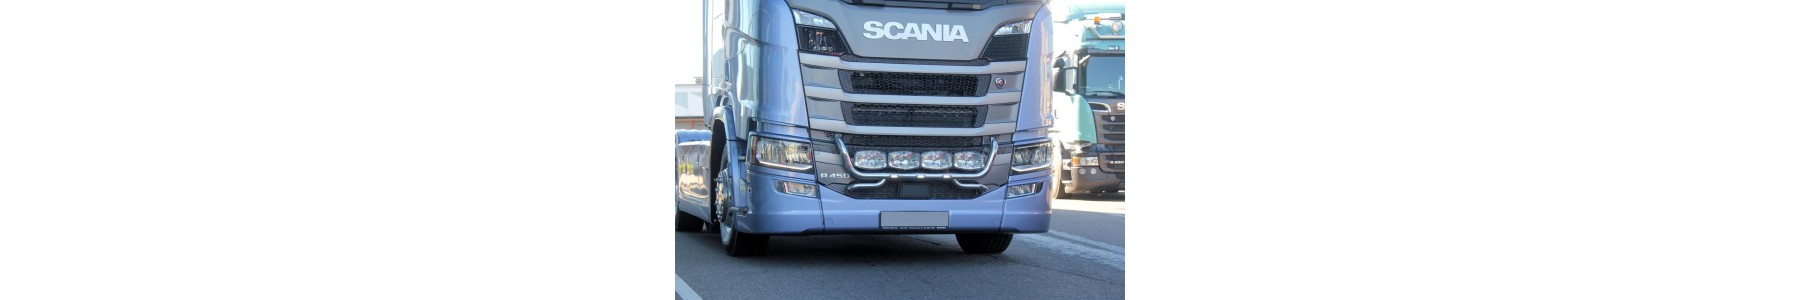 Rampe de calandre pour votre poids lourd Scania next génération. 22h22: Vente accessoires tuning poids lourd